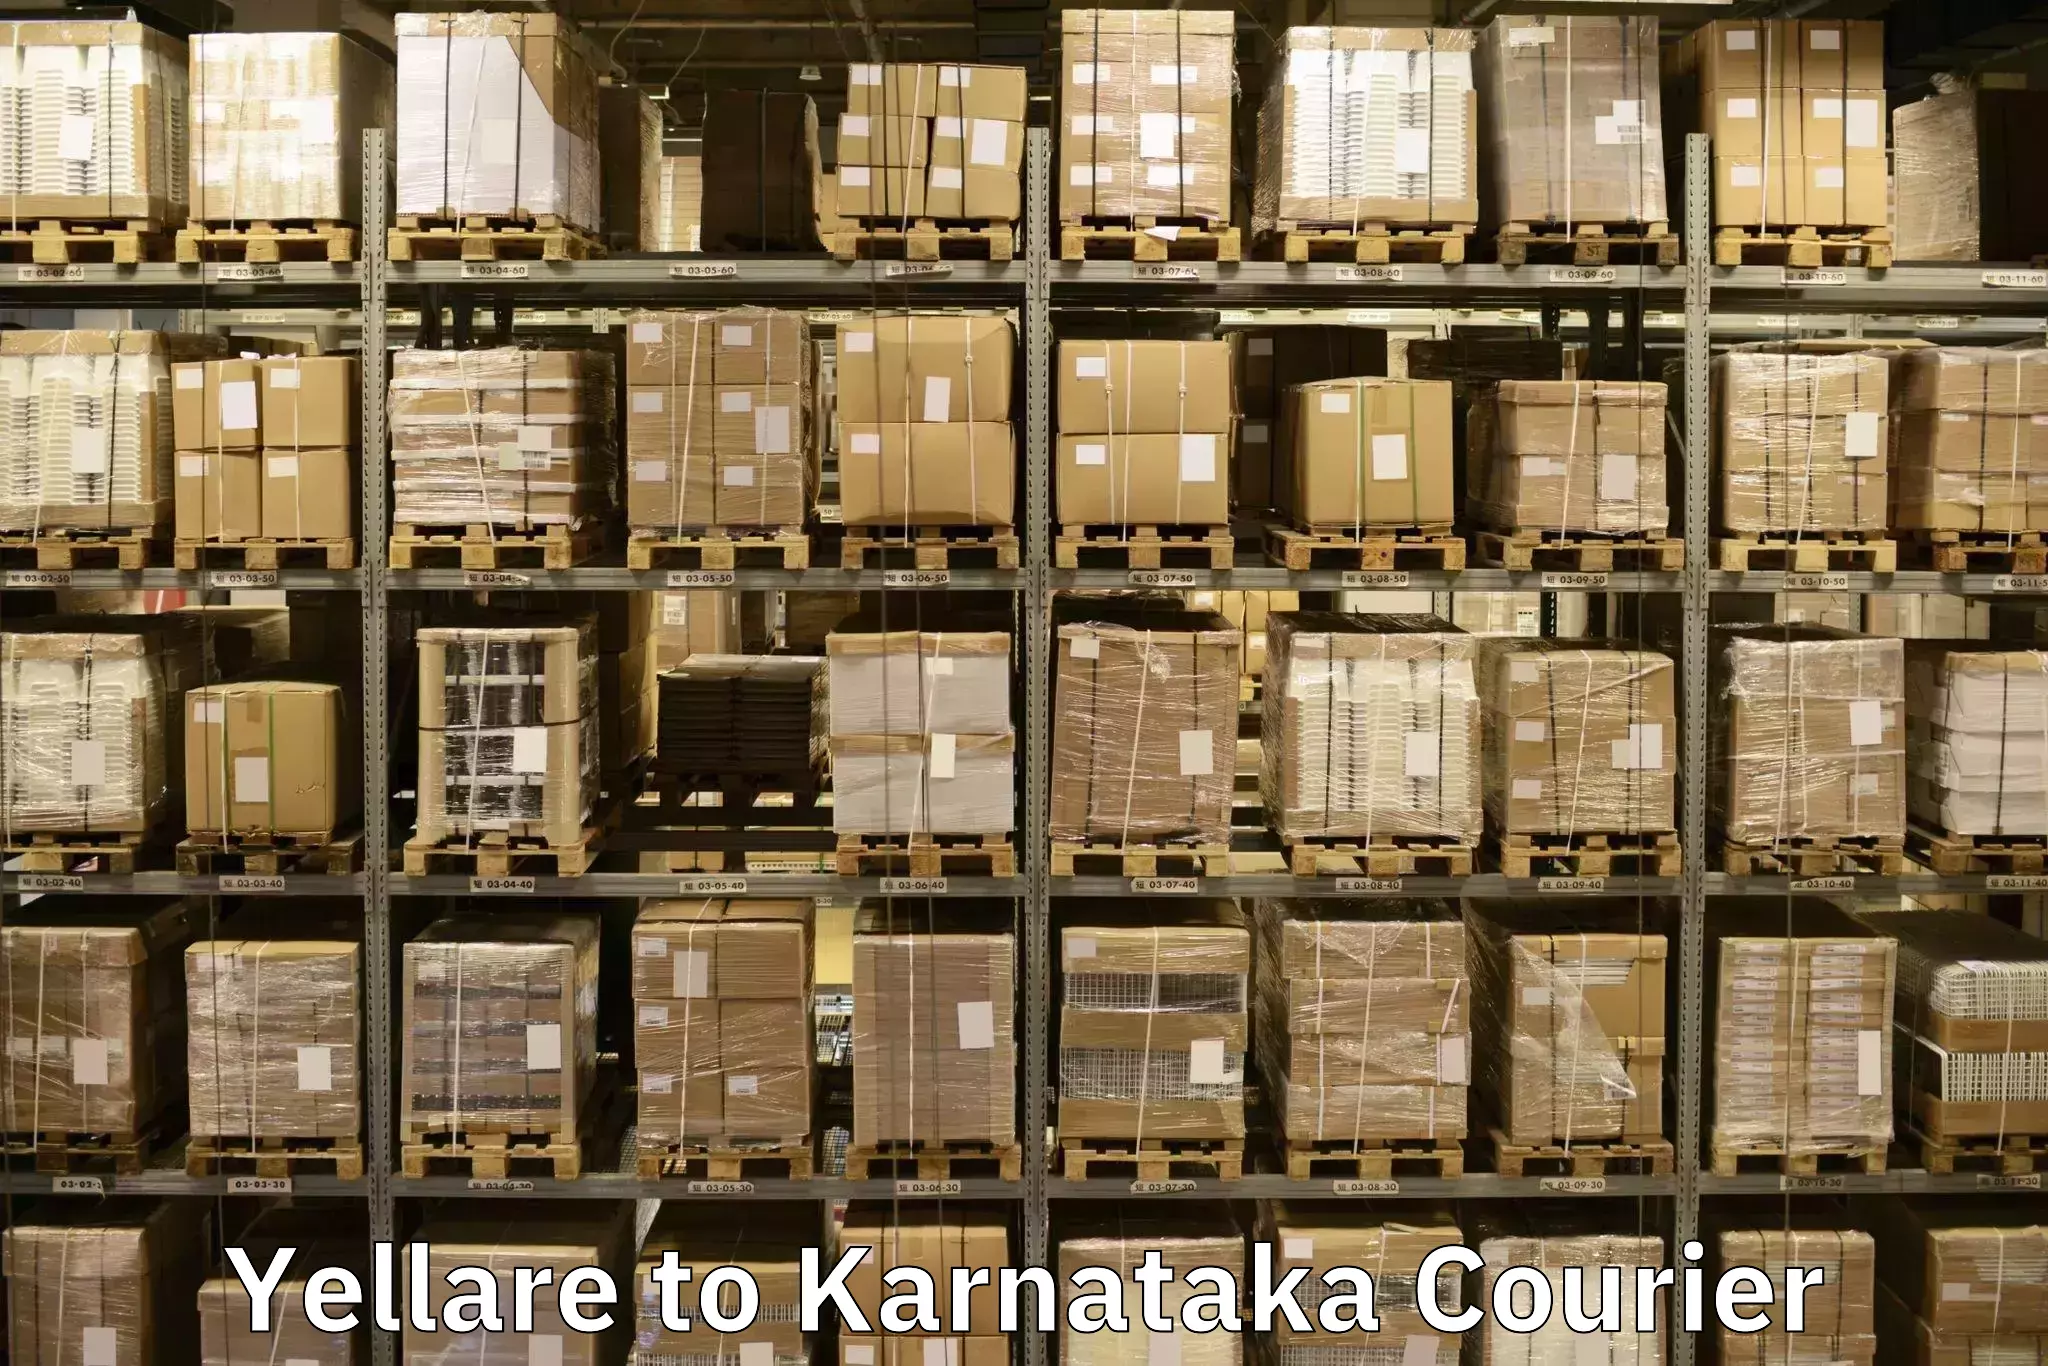 Professional packing services Yellare to Kanjarakatte